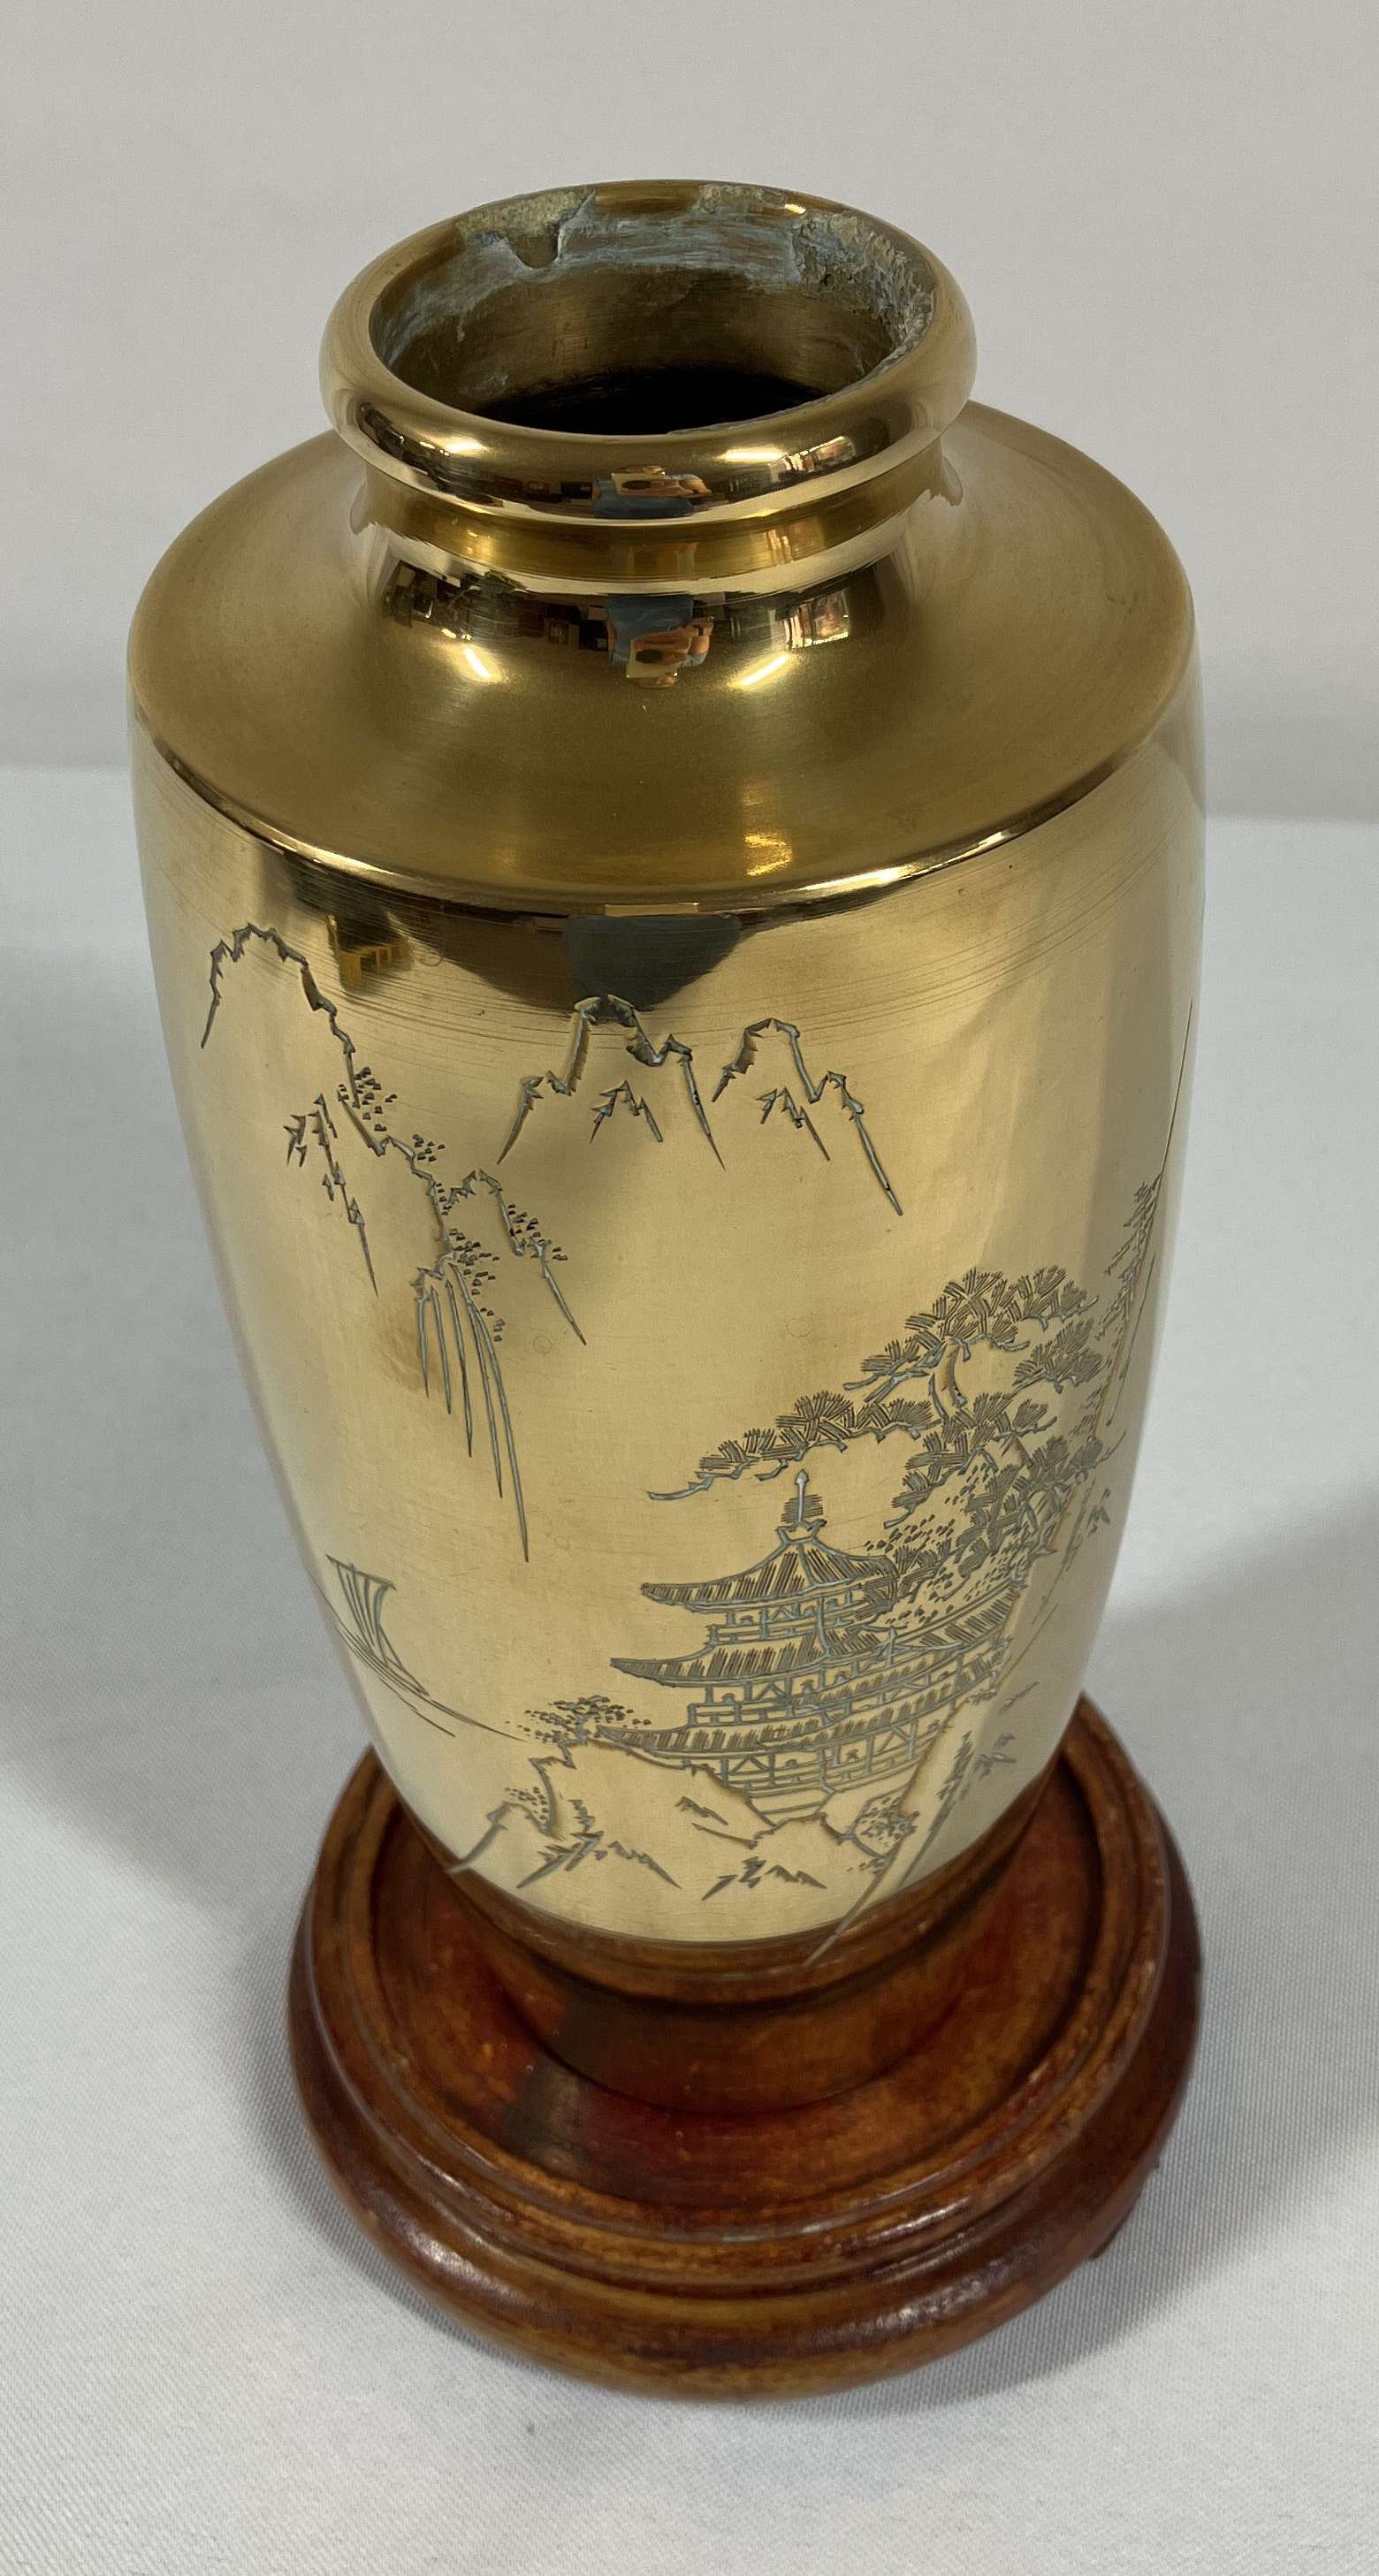 Vintage Brass Vase From India, Small Floral Vase, Engraved Vase, Boho  Decor, Solid Brass Vase, Flower Vase 